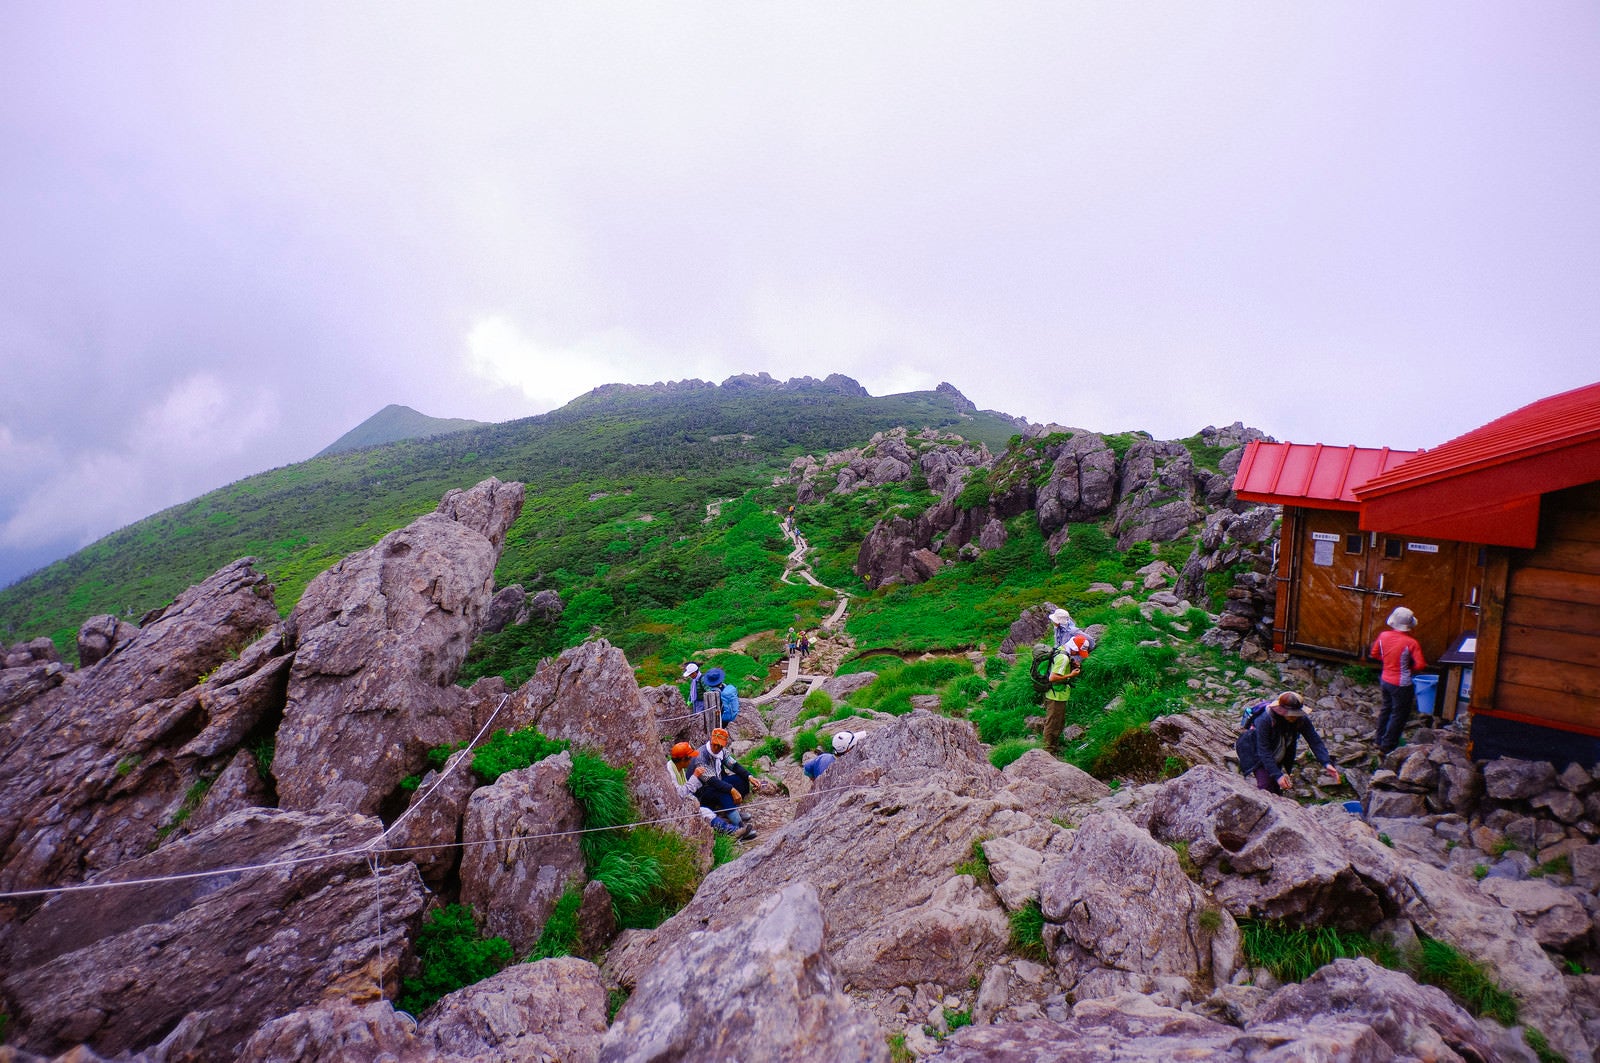 「早池峰山山頂で休む人々」の写真